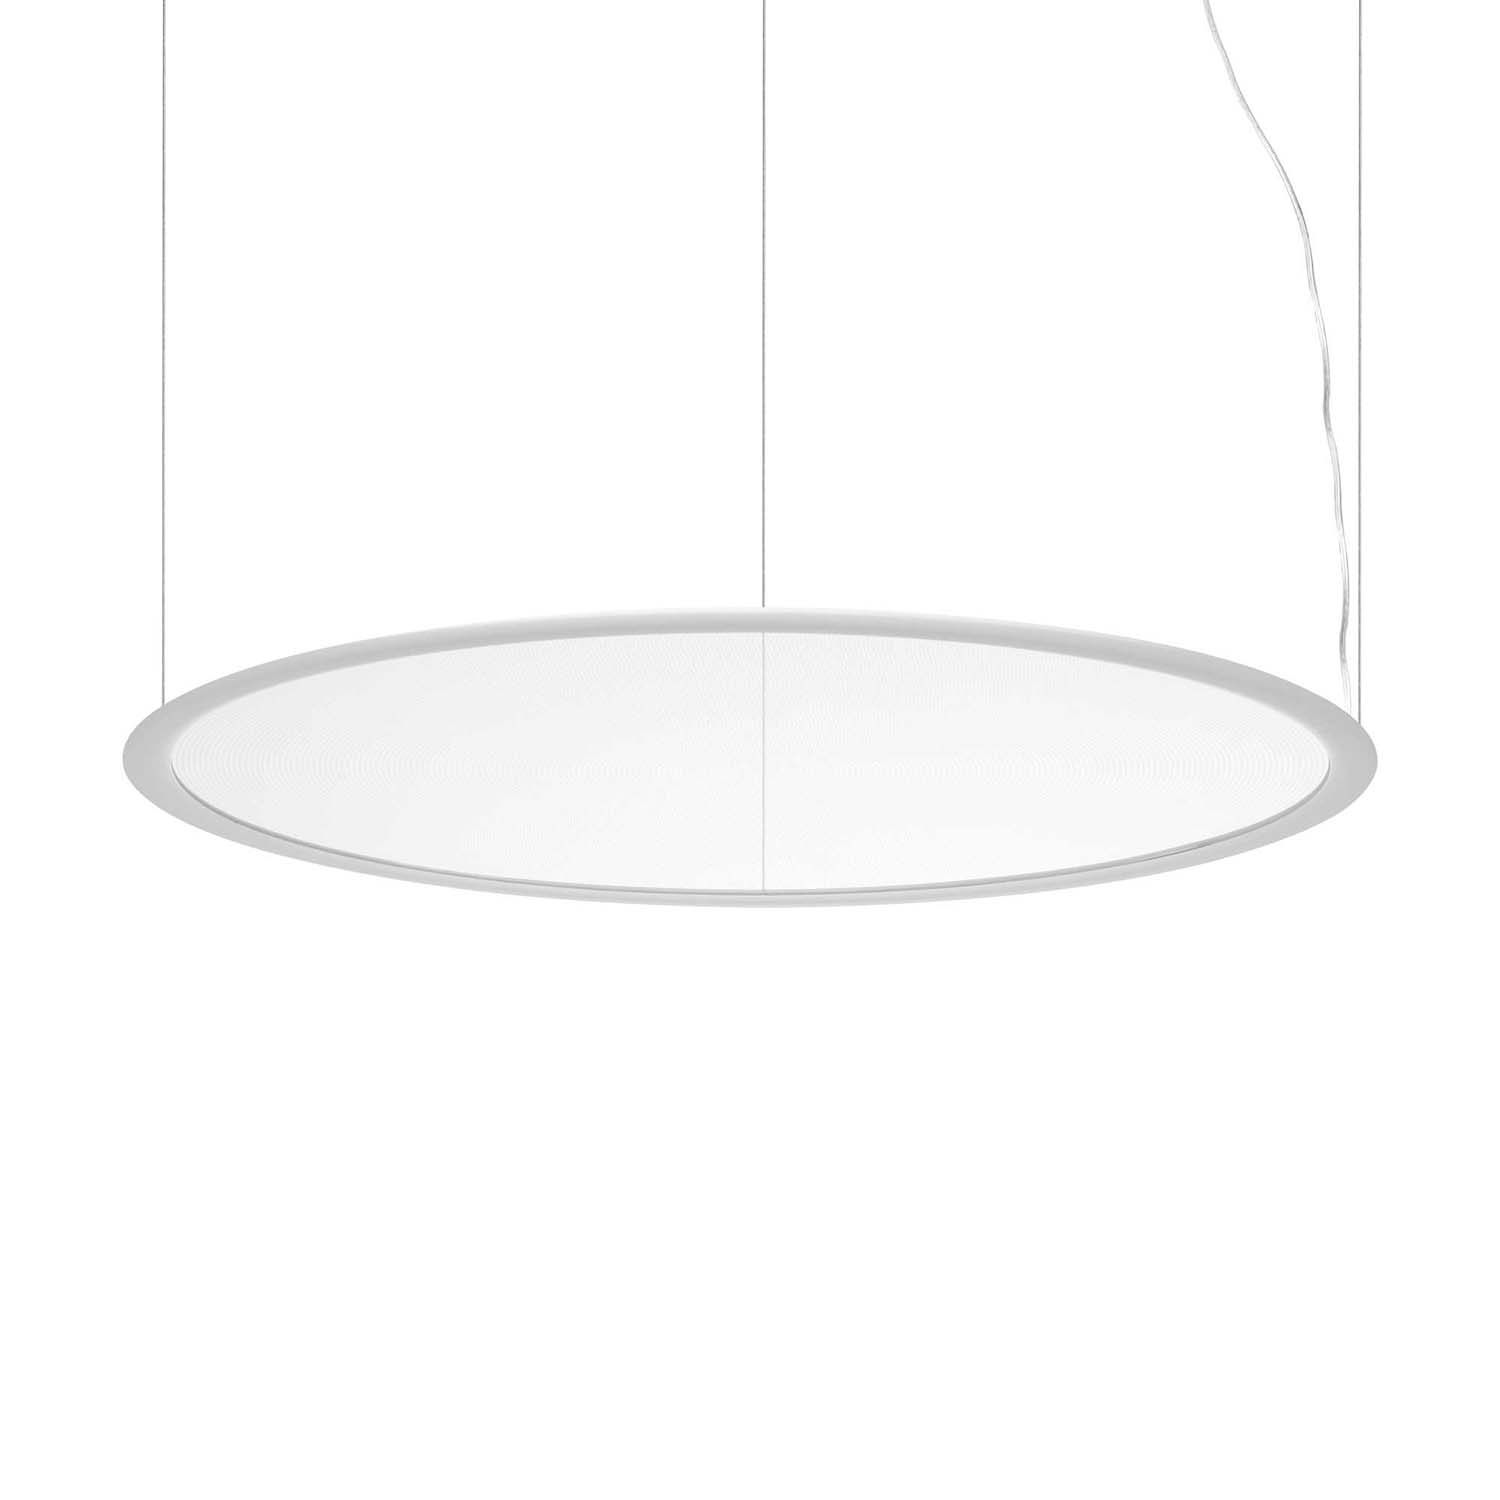 ORBIT - Modern black or white LED disk pendant light